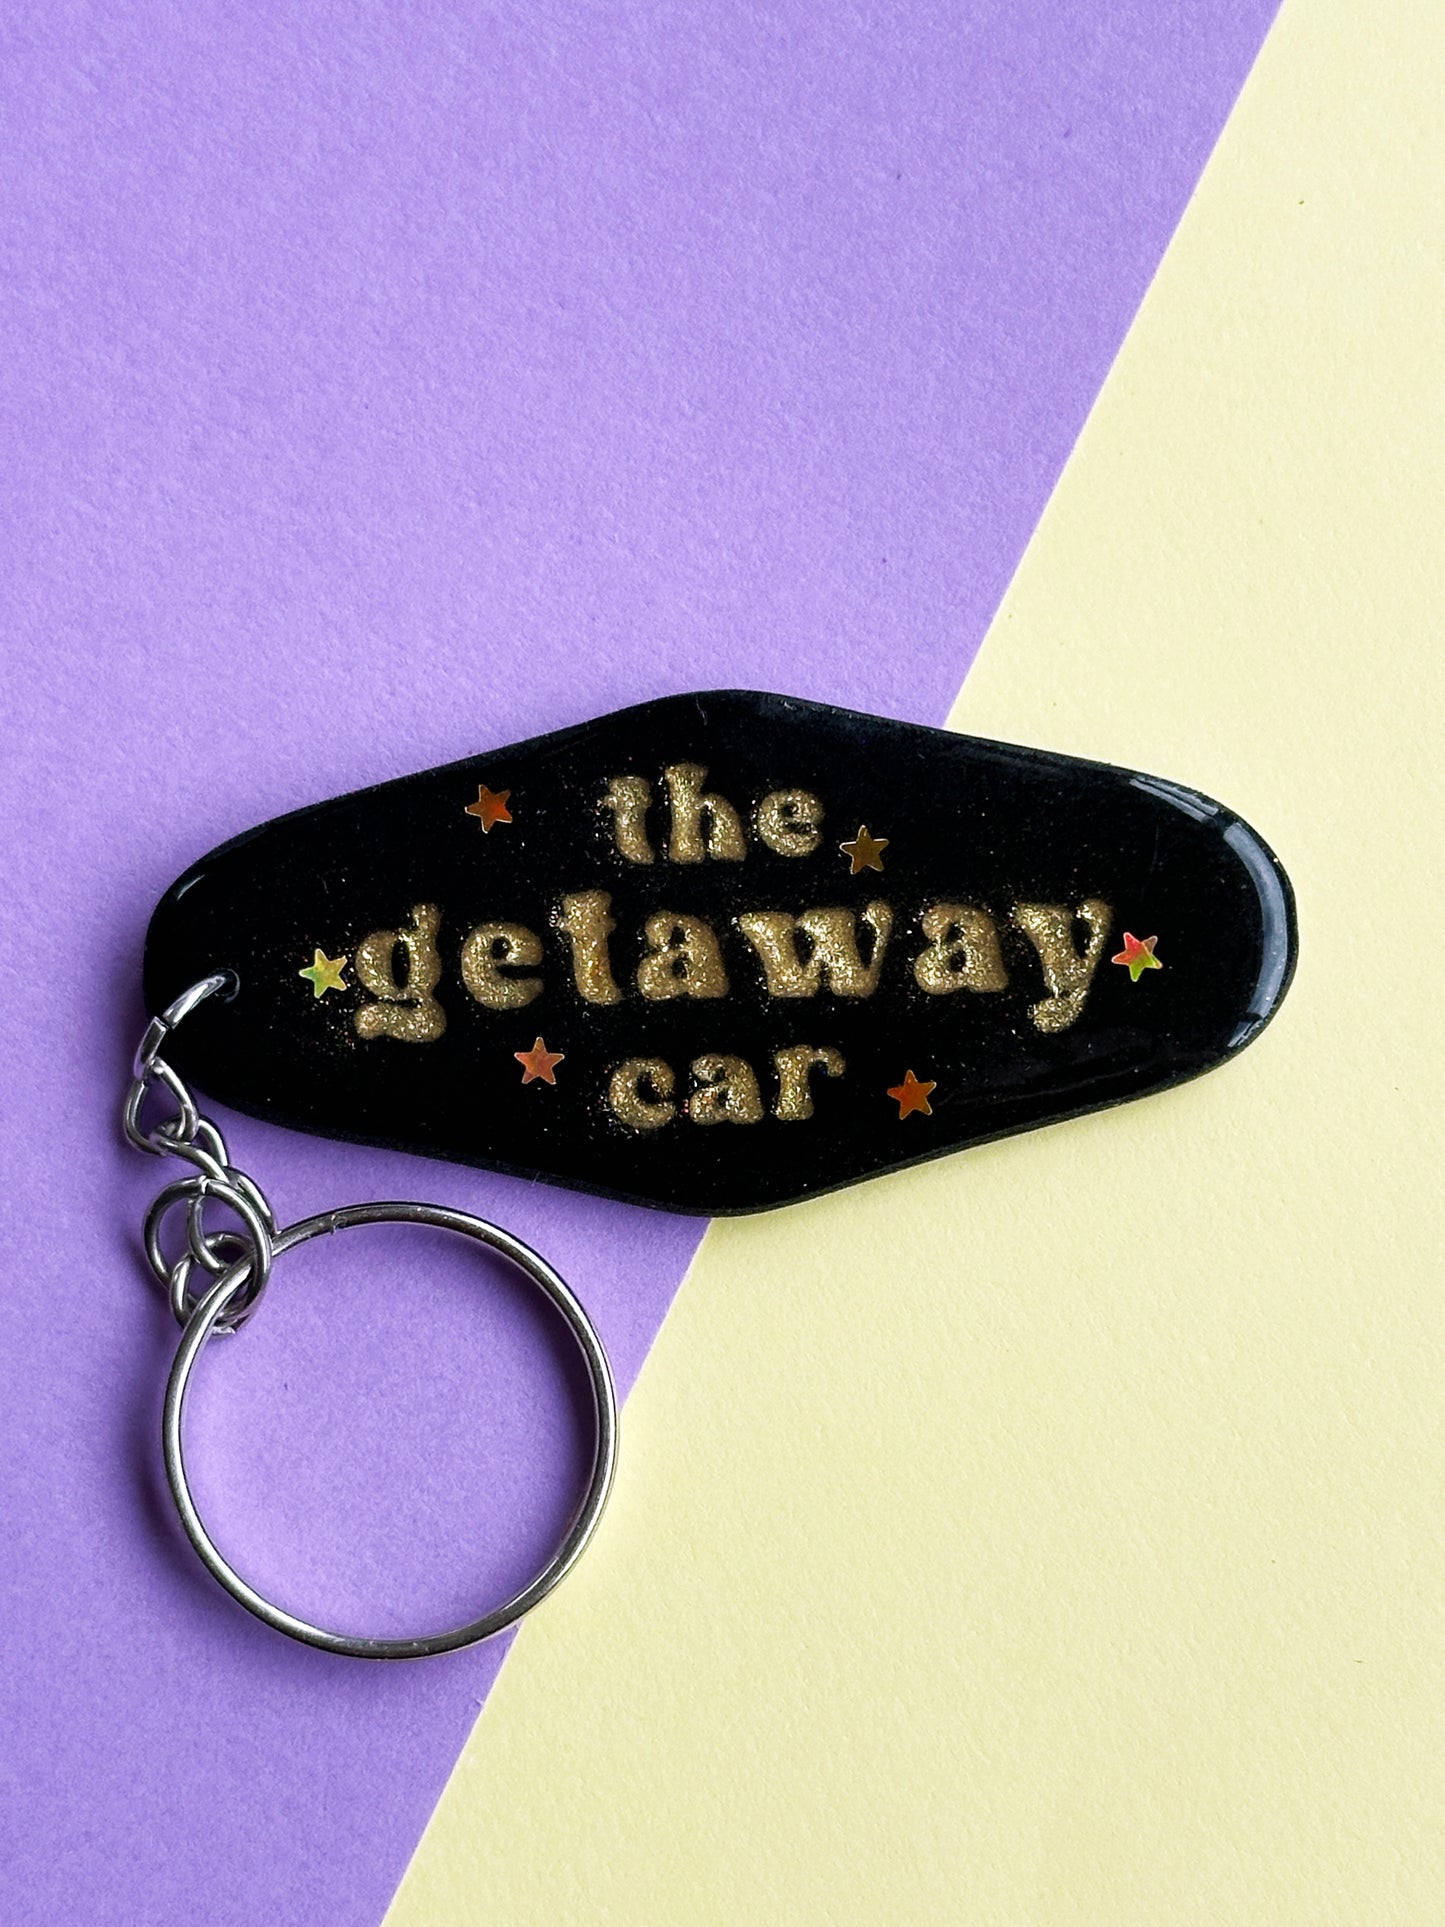 Getaway Car Keychain